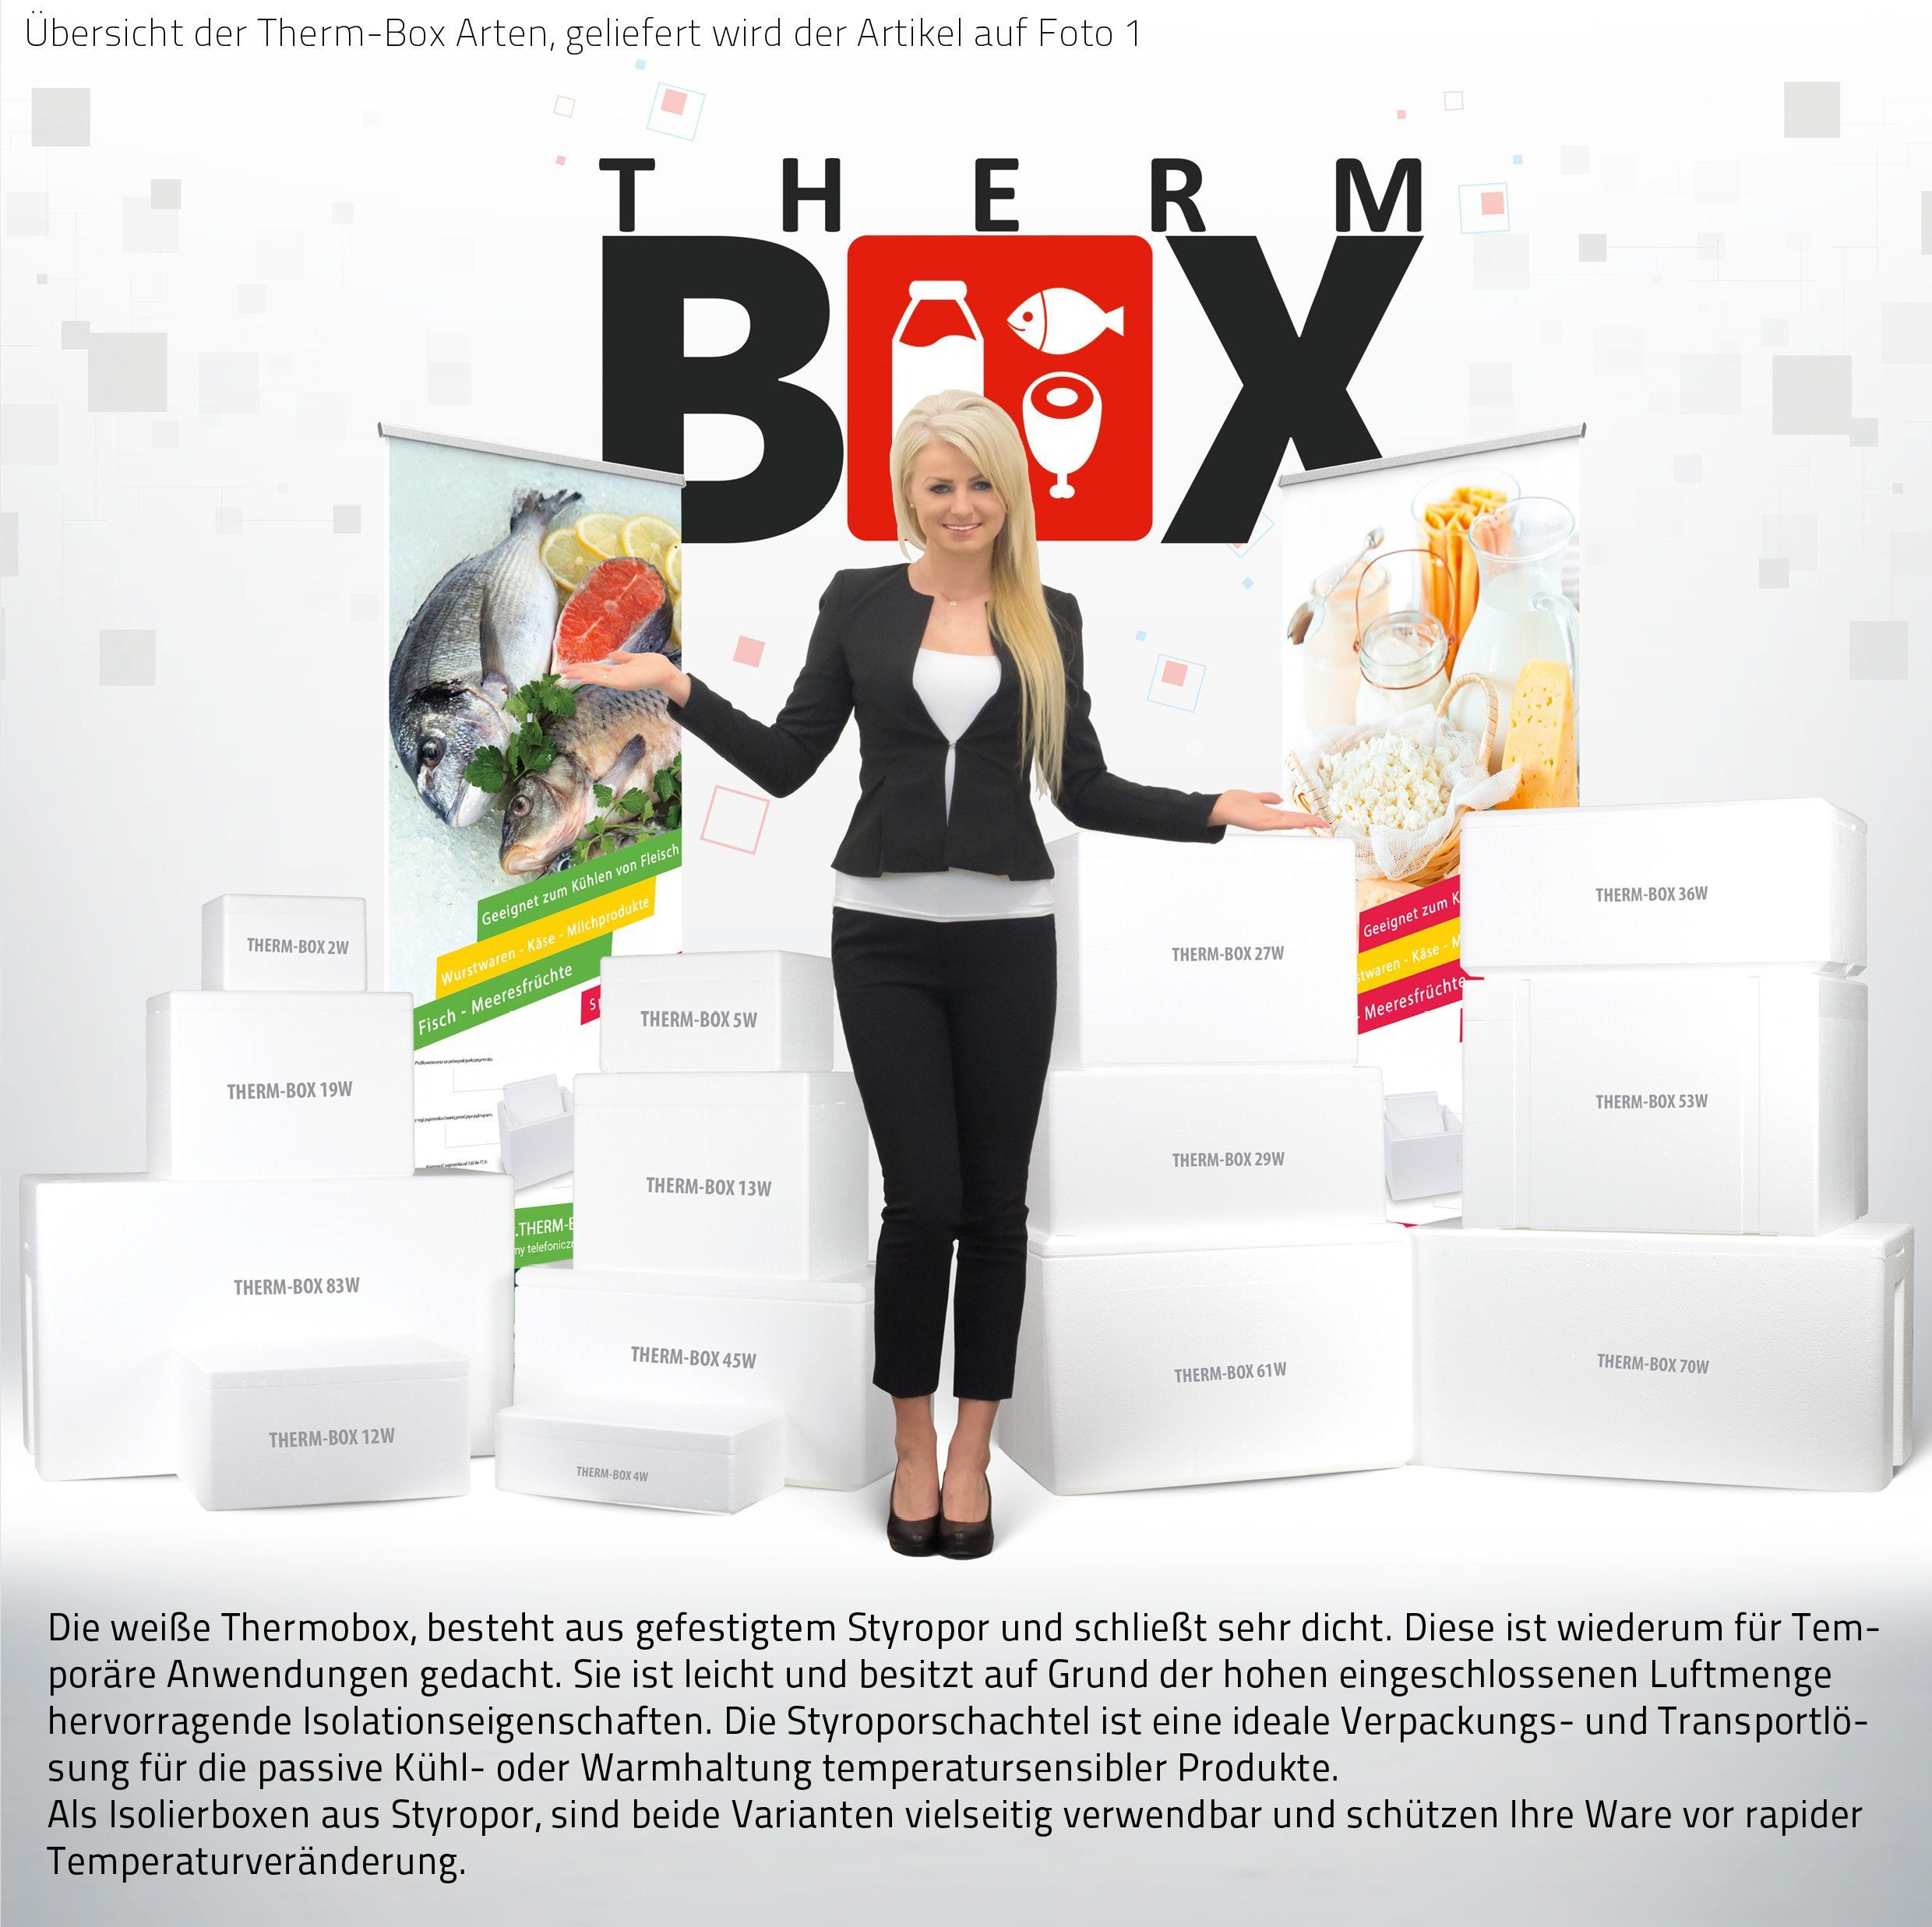 36W 3cm Kühlbox im Wand: Karton), THERM-BOX mit (1, Innenmaß:53x33x20cm, Thermobox Isolierbox Thermobehälter Styroporbox Box Deckel Warmhaltebox 0-tlg., Wiederverwendbar Styropor-Verdichtet, 36,1L